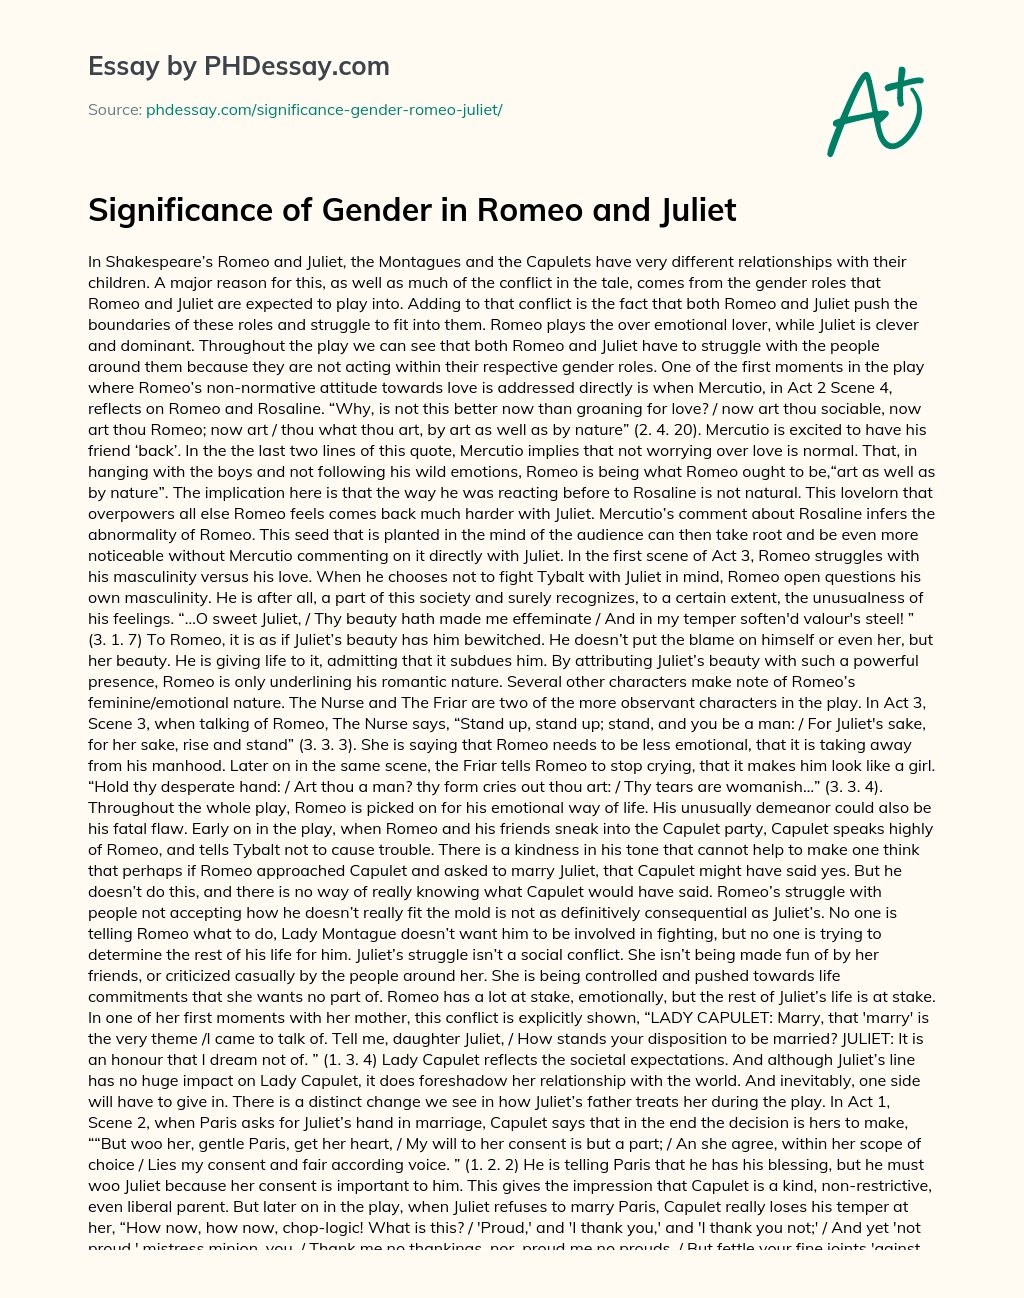 romeo and juliet gender essay